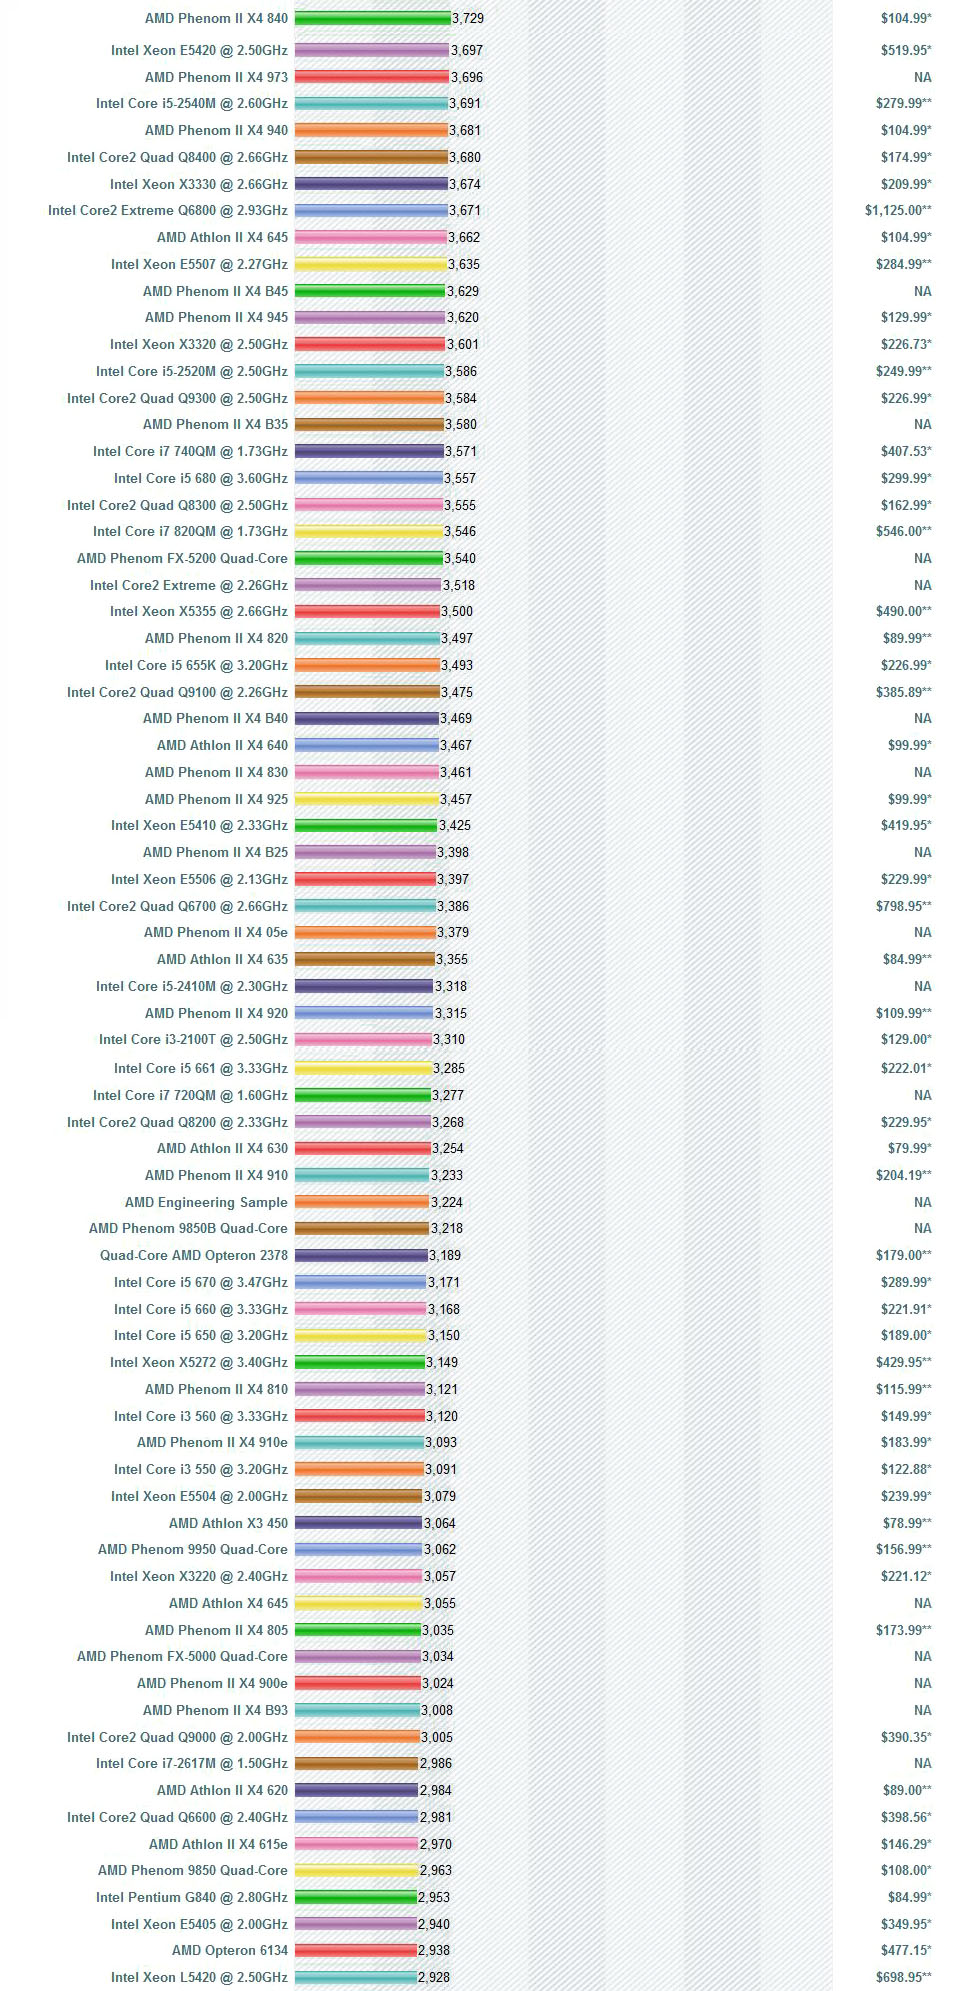 Ranking de procesadores y precios en U.S. $ B9C81069E